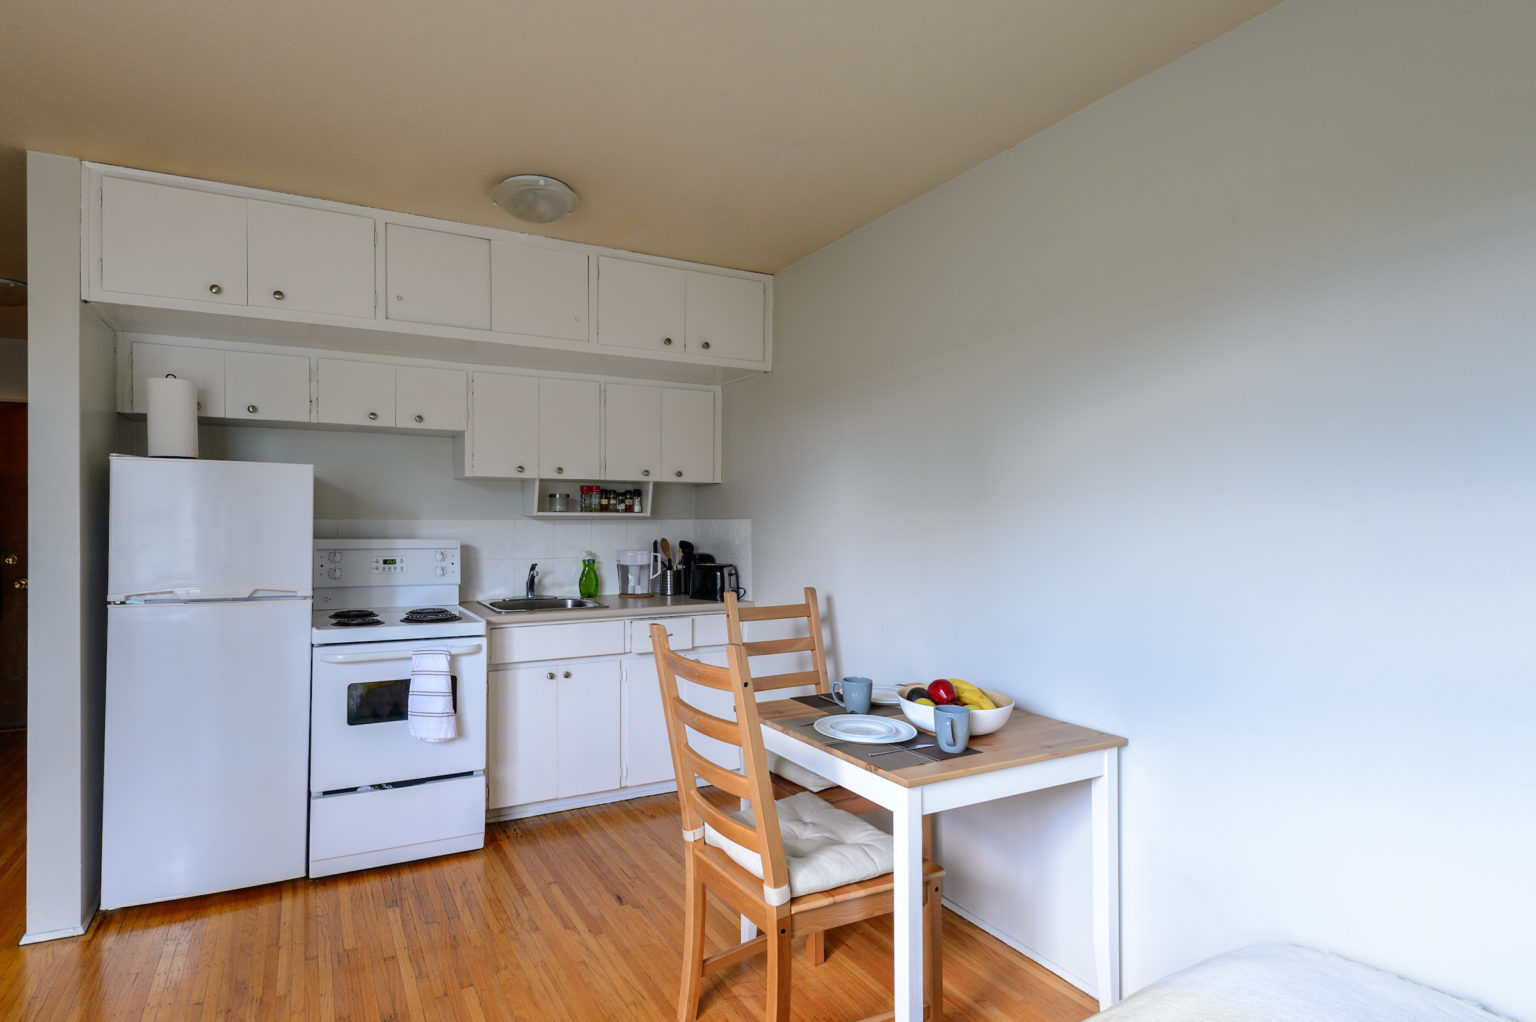 تزئین یک آپارتمان کوچک: در کل زیاد سخت نمی باشد